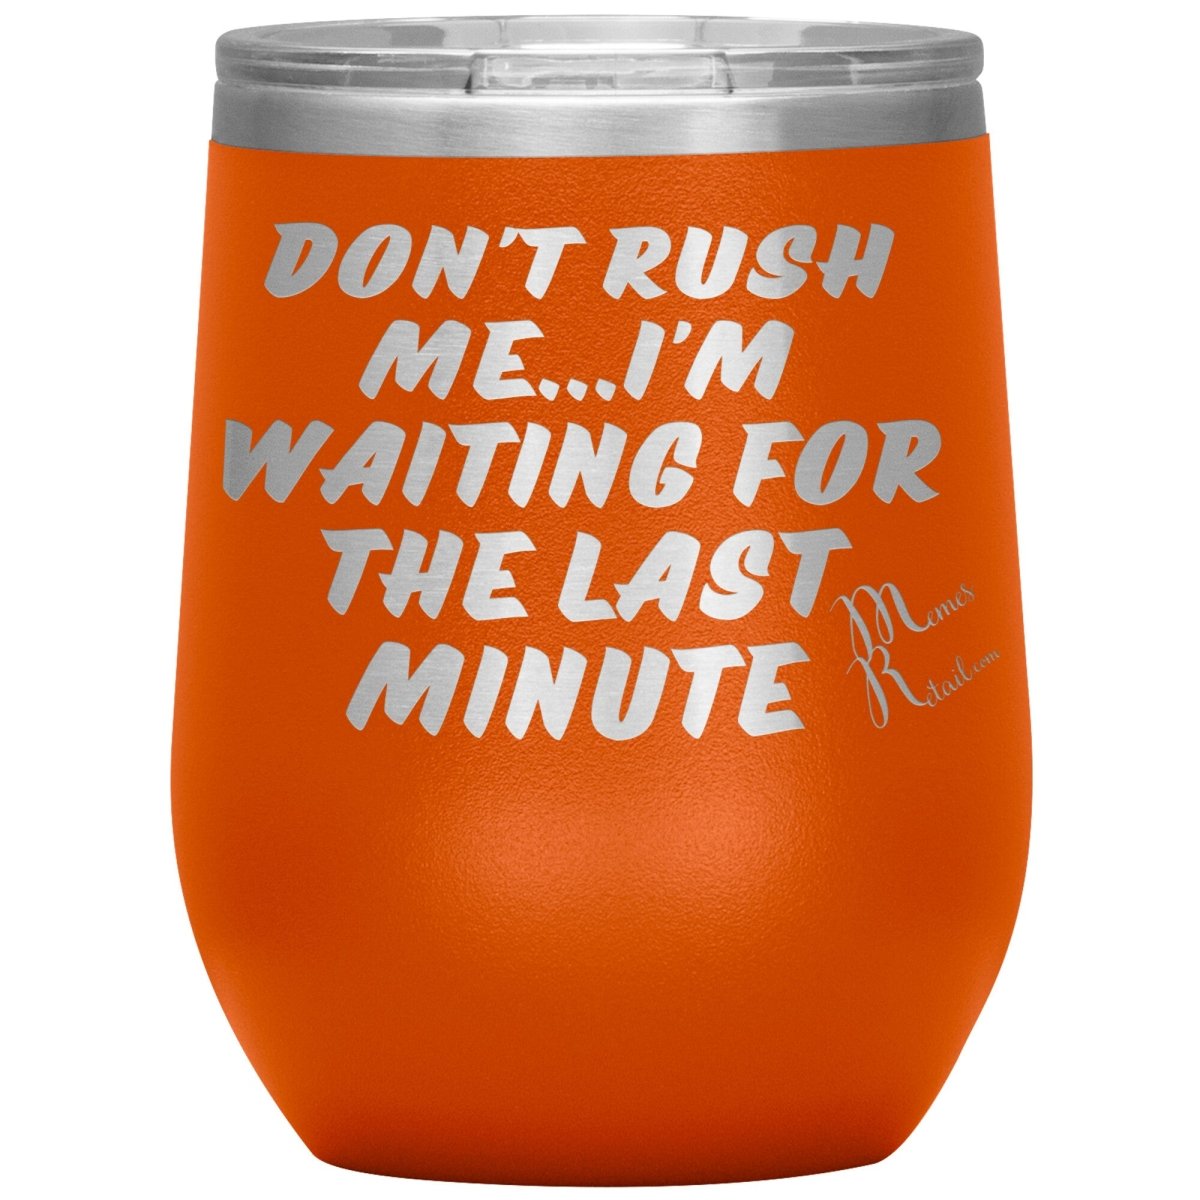 Don't Rush Me... I'm Waiting For The Last Minute Tumbers, 12oz Wine Insulated Tumbler / Orange - MemesRetail.com